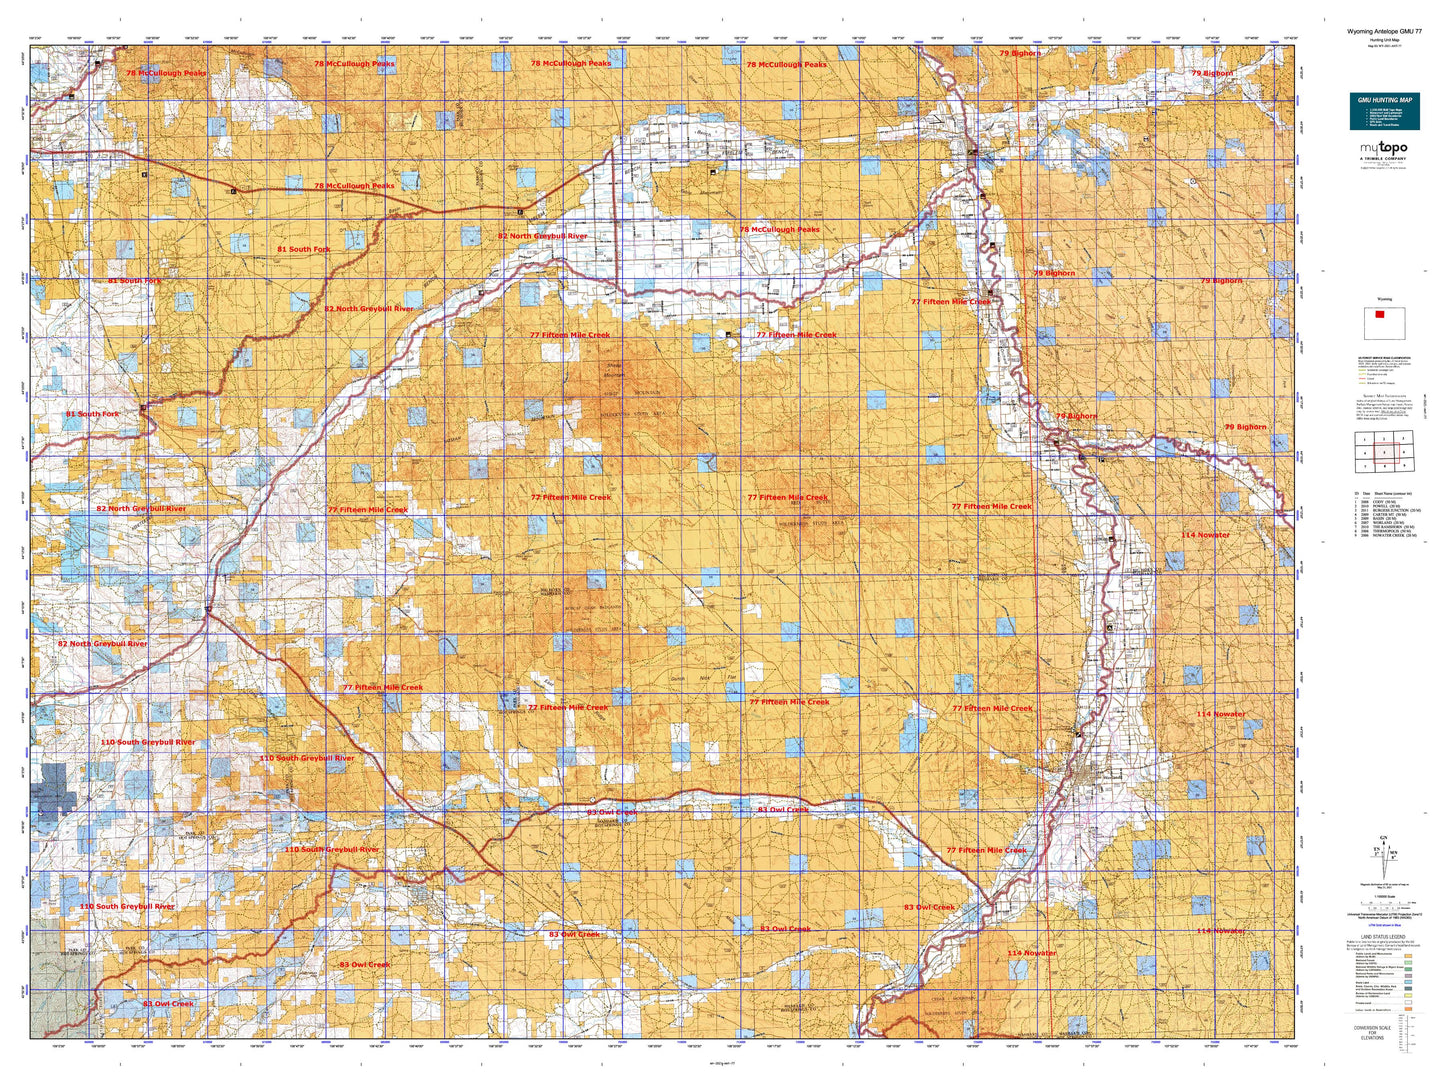 Wyoming Antelope GMU 77 Map Image